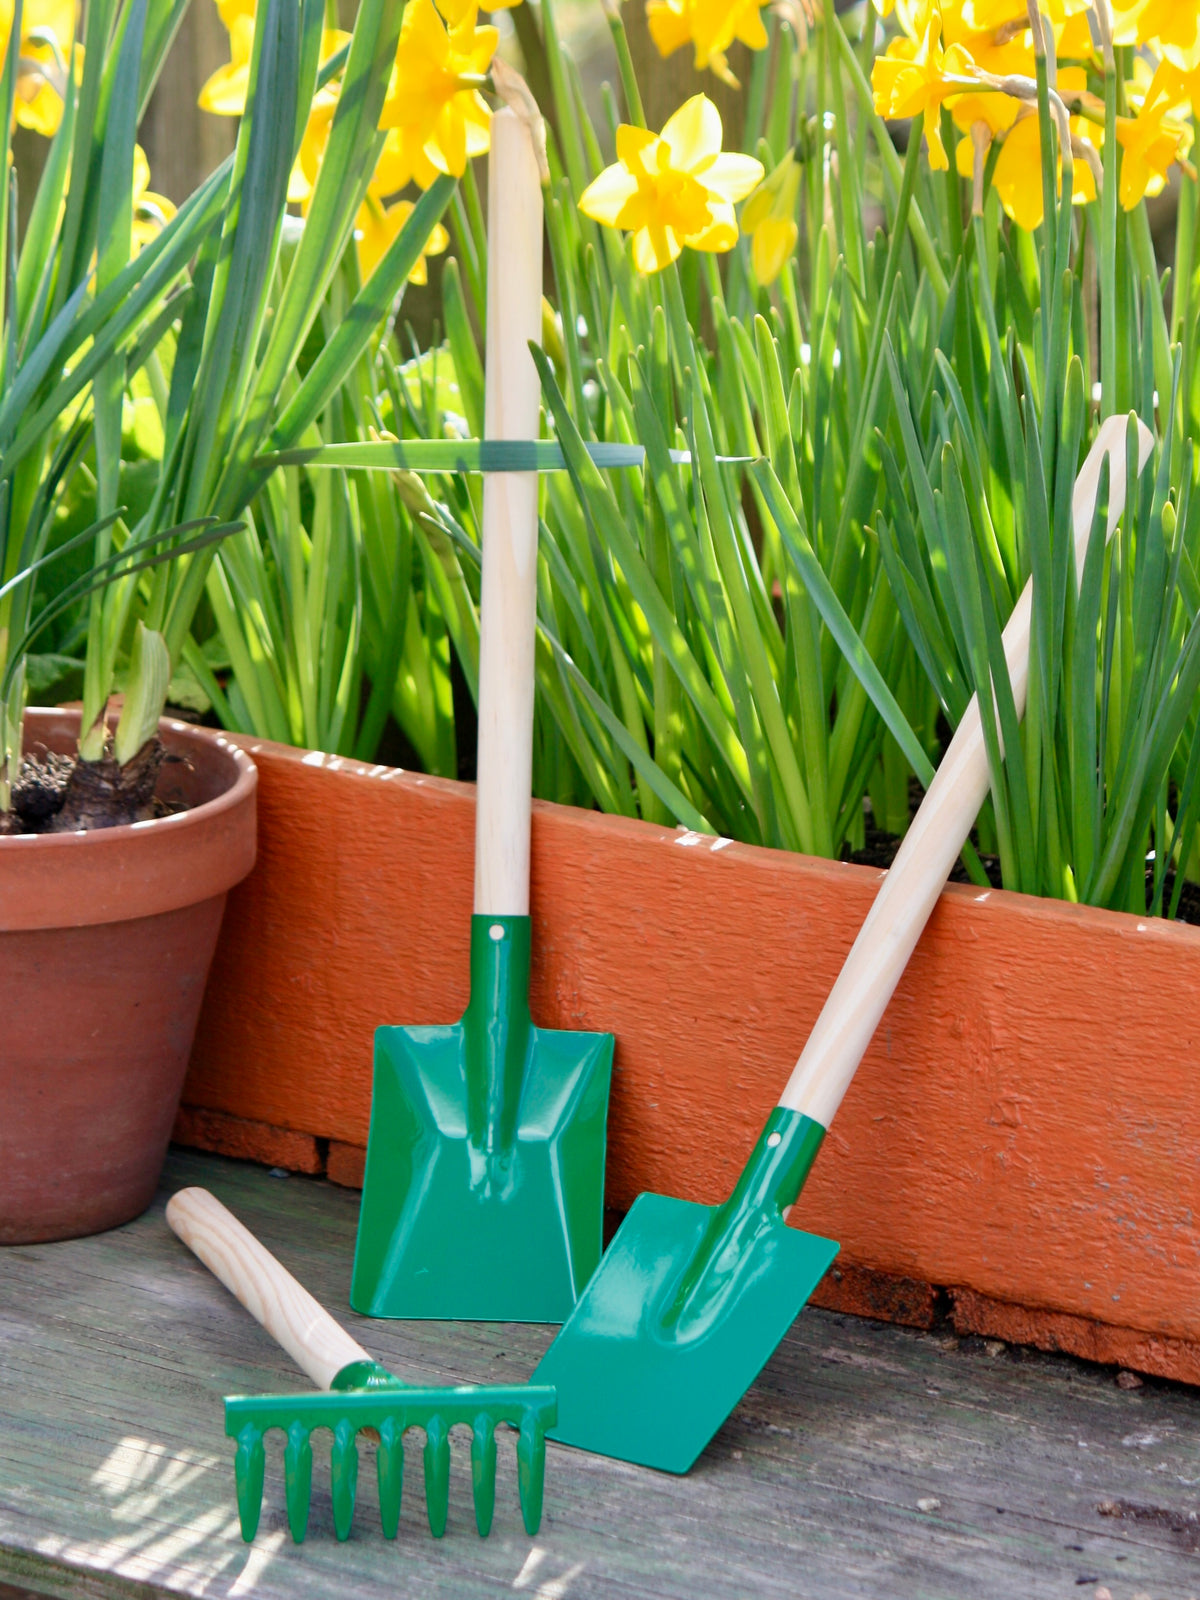 Redecker Children's Garden Tool Set, Green